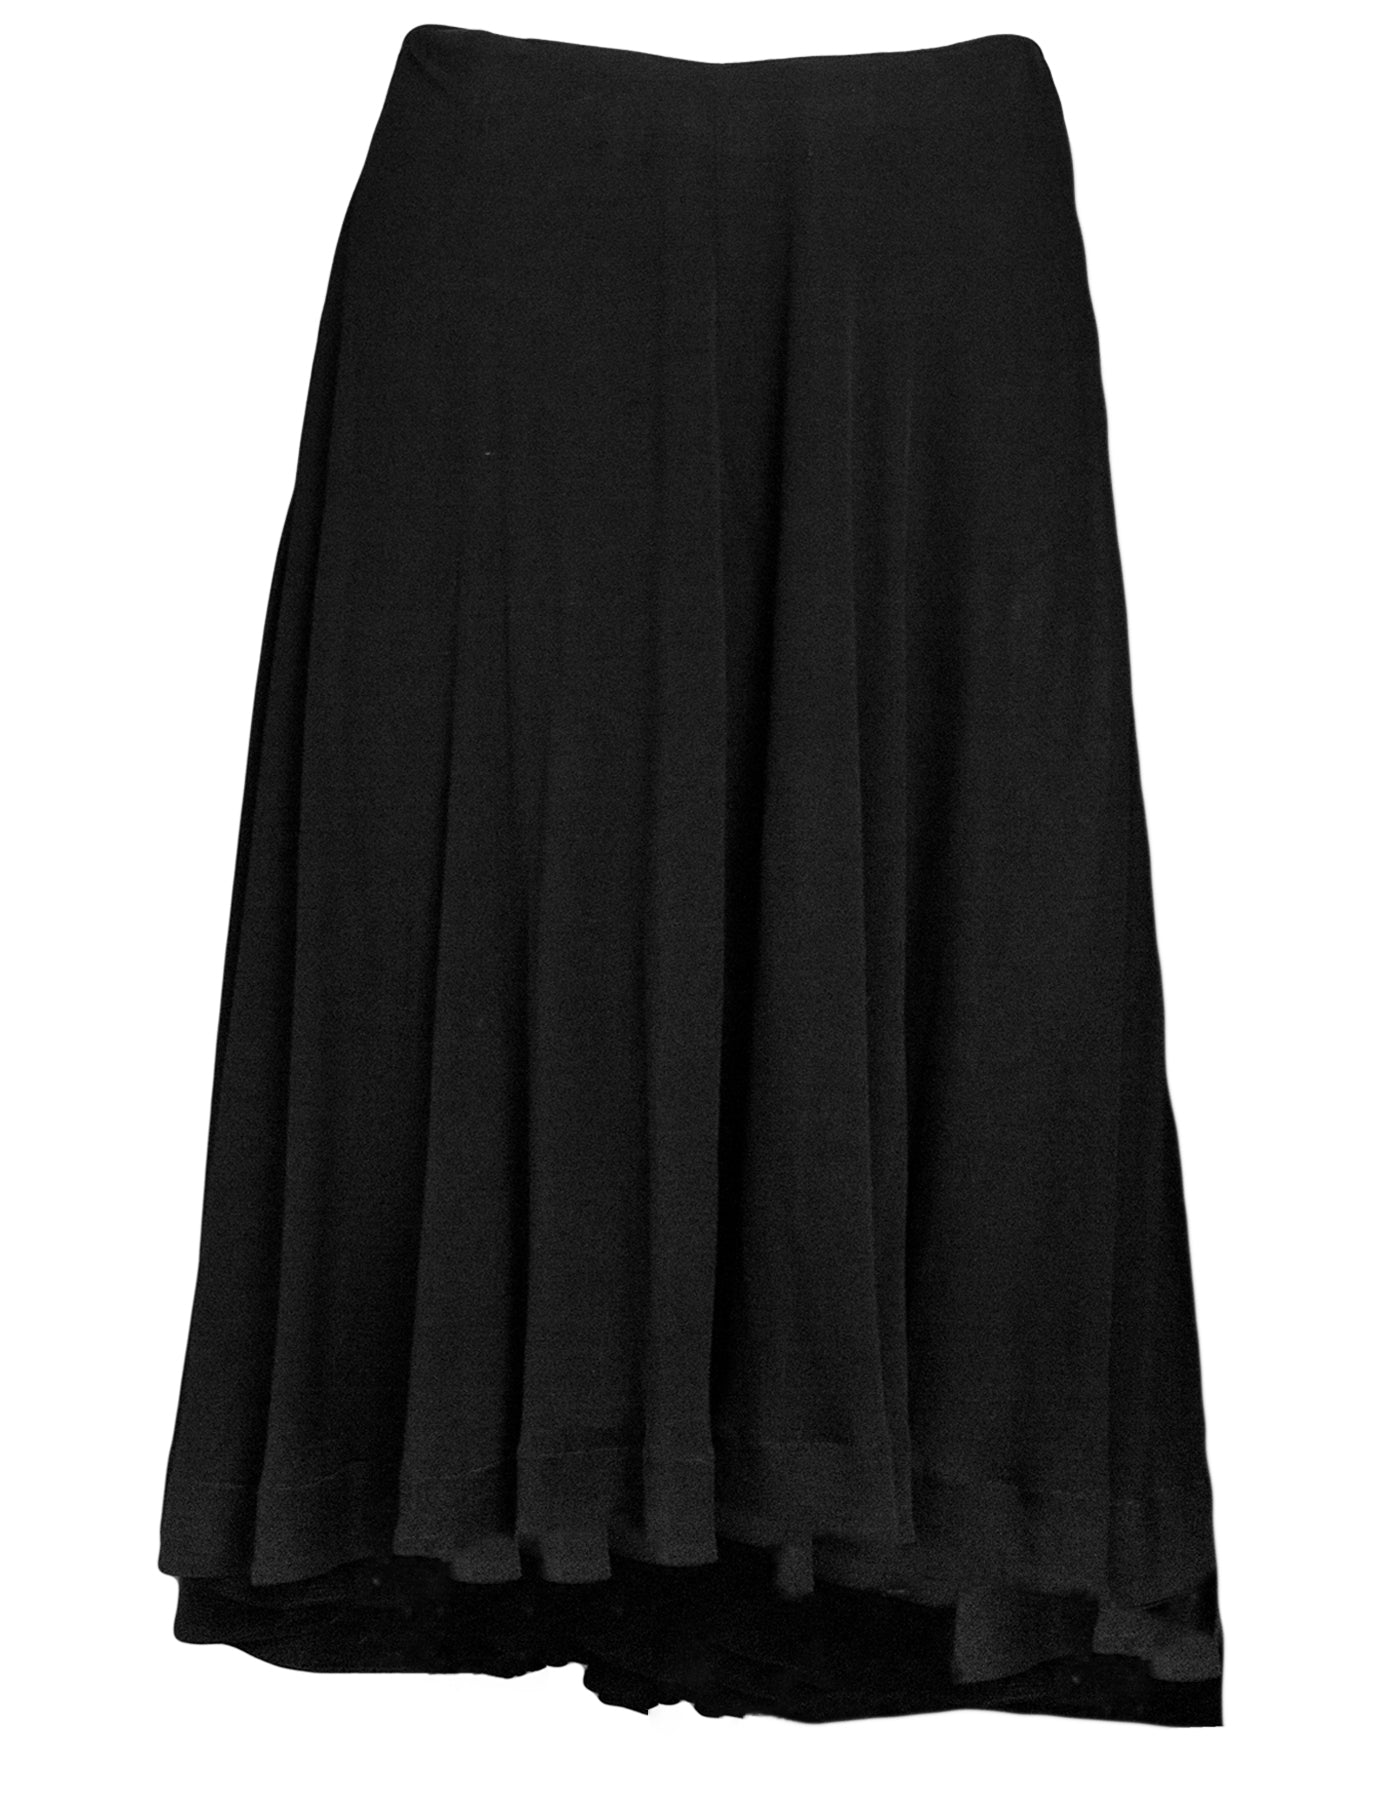 Alaia Black Skirt Sz FR40